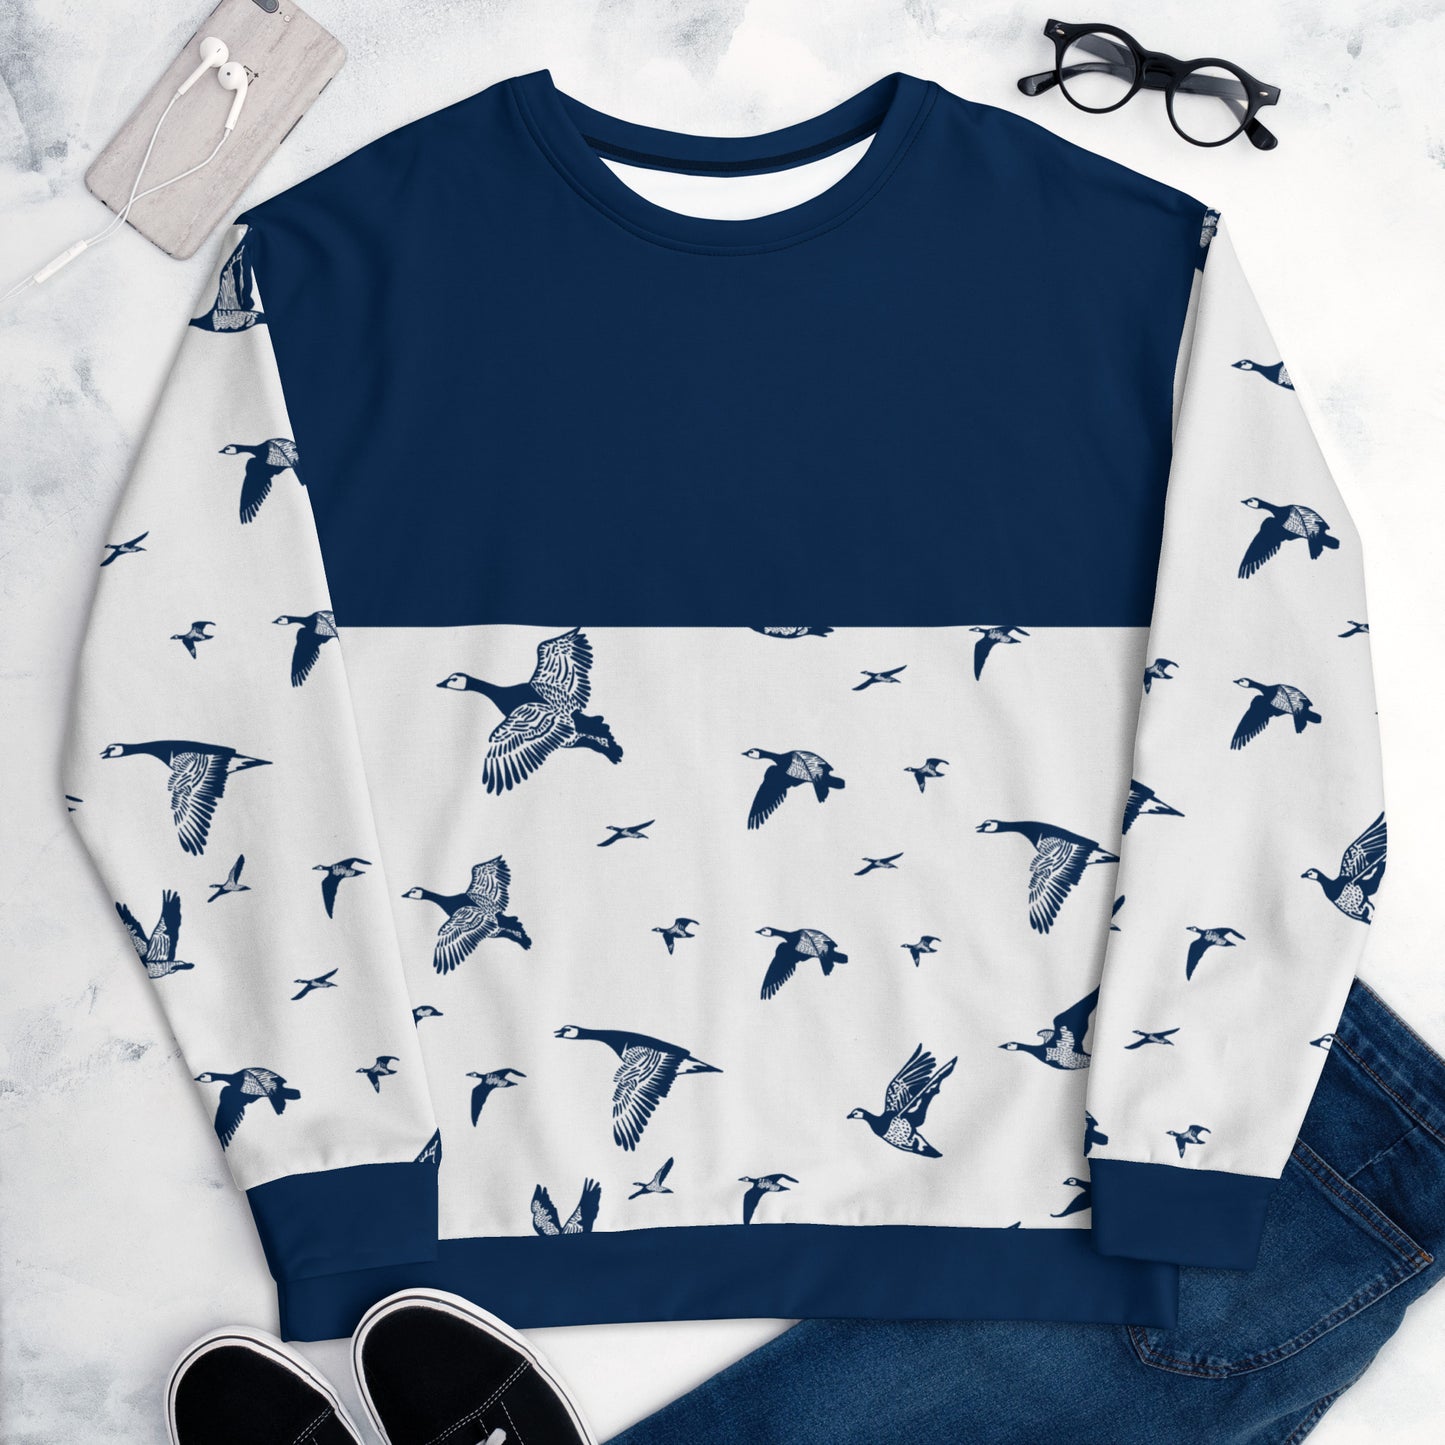 Oh my geese - Unisex Sweatshirt - Long Sleeve- Print N Stuff - [designed in Turku FInland]